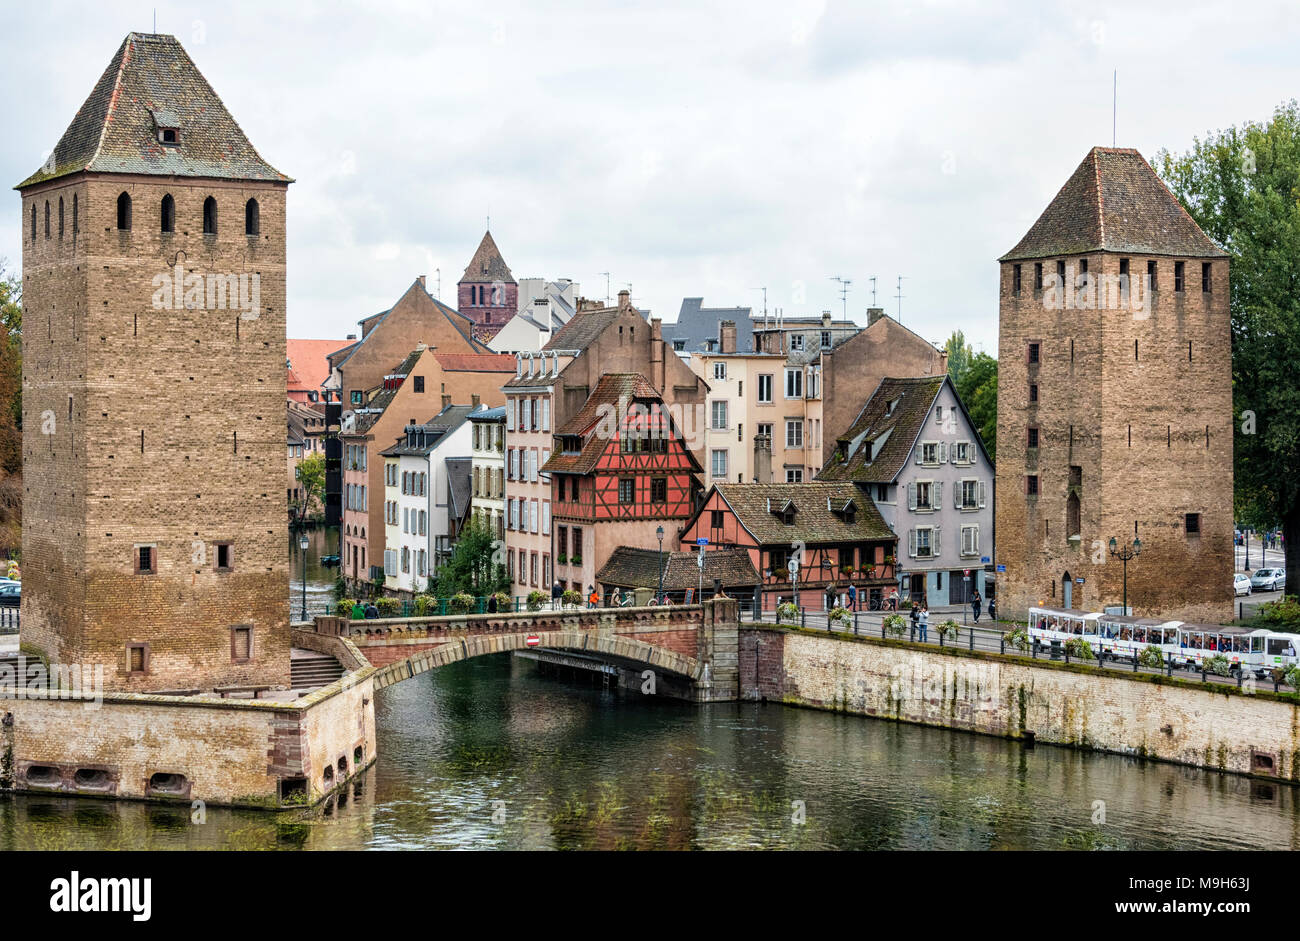 Deux tours et un pont de la Ponts Couverts sur la rivière Ill, Strasbourg, Bas-Rhin, France Banque D'Images